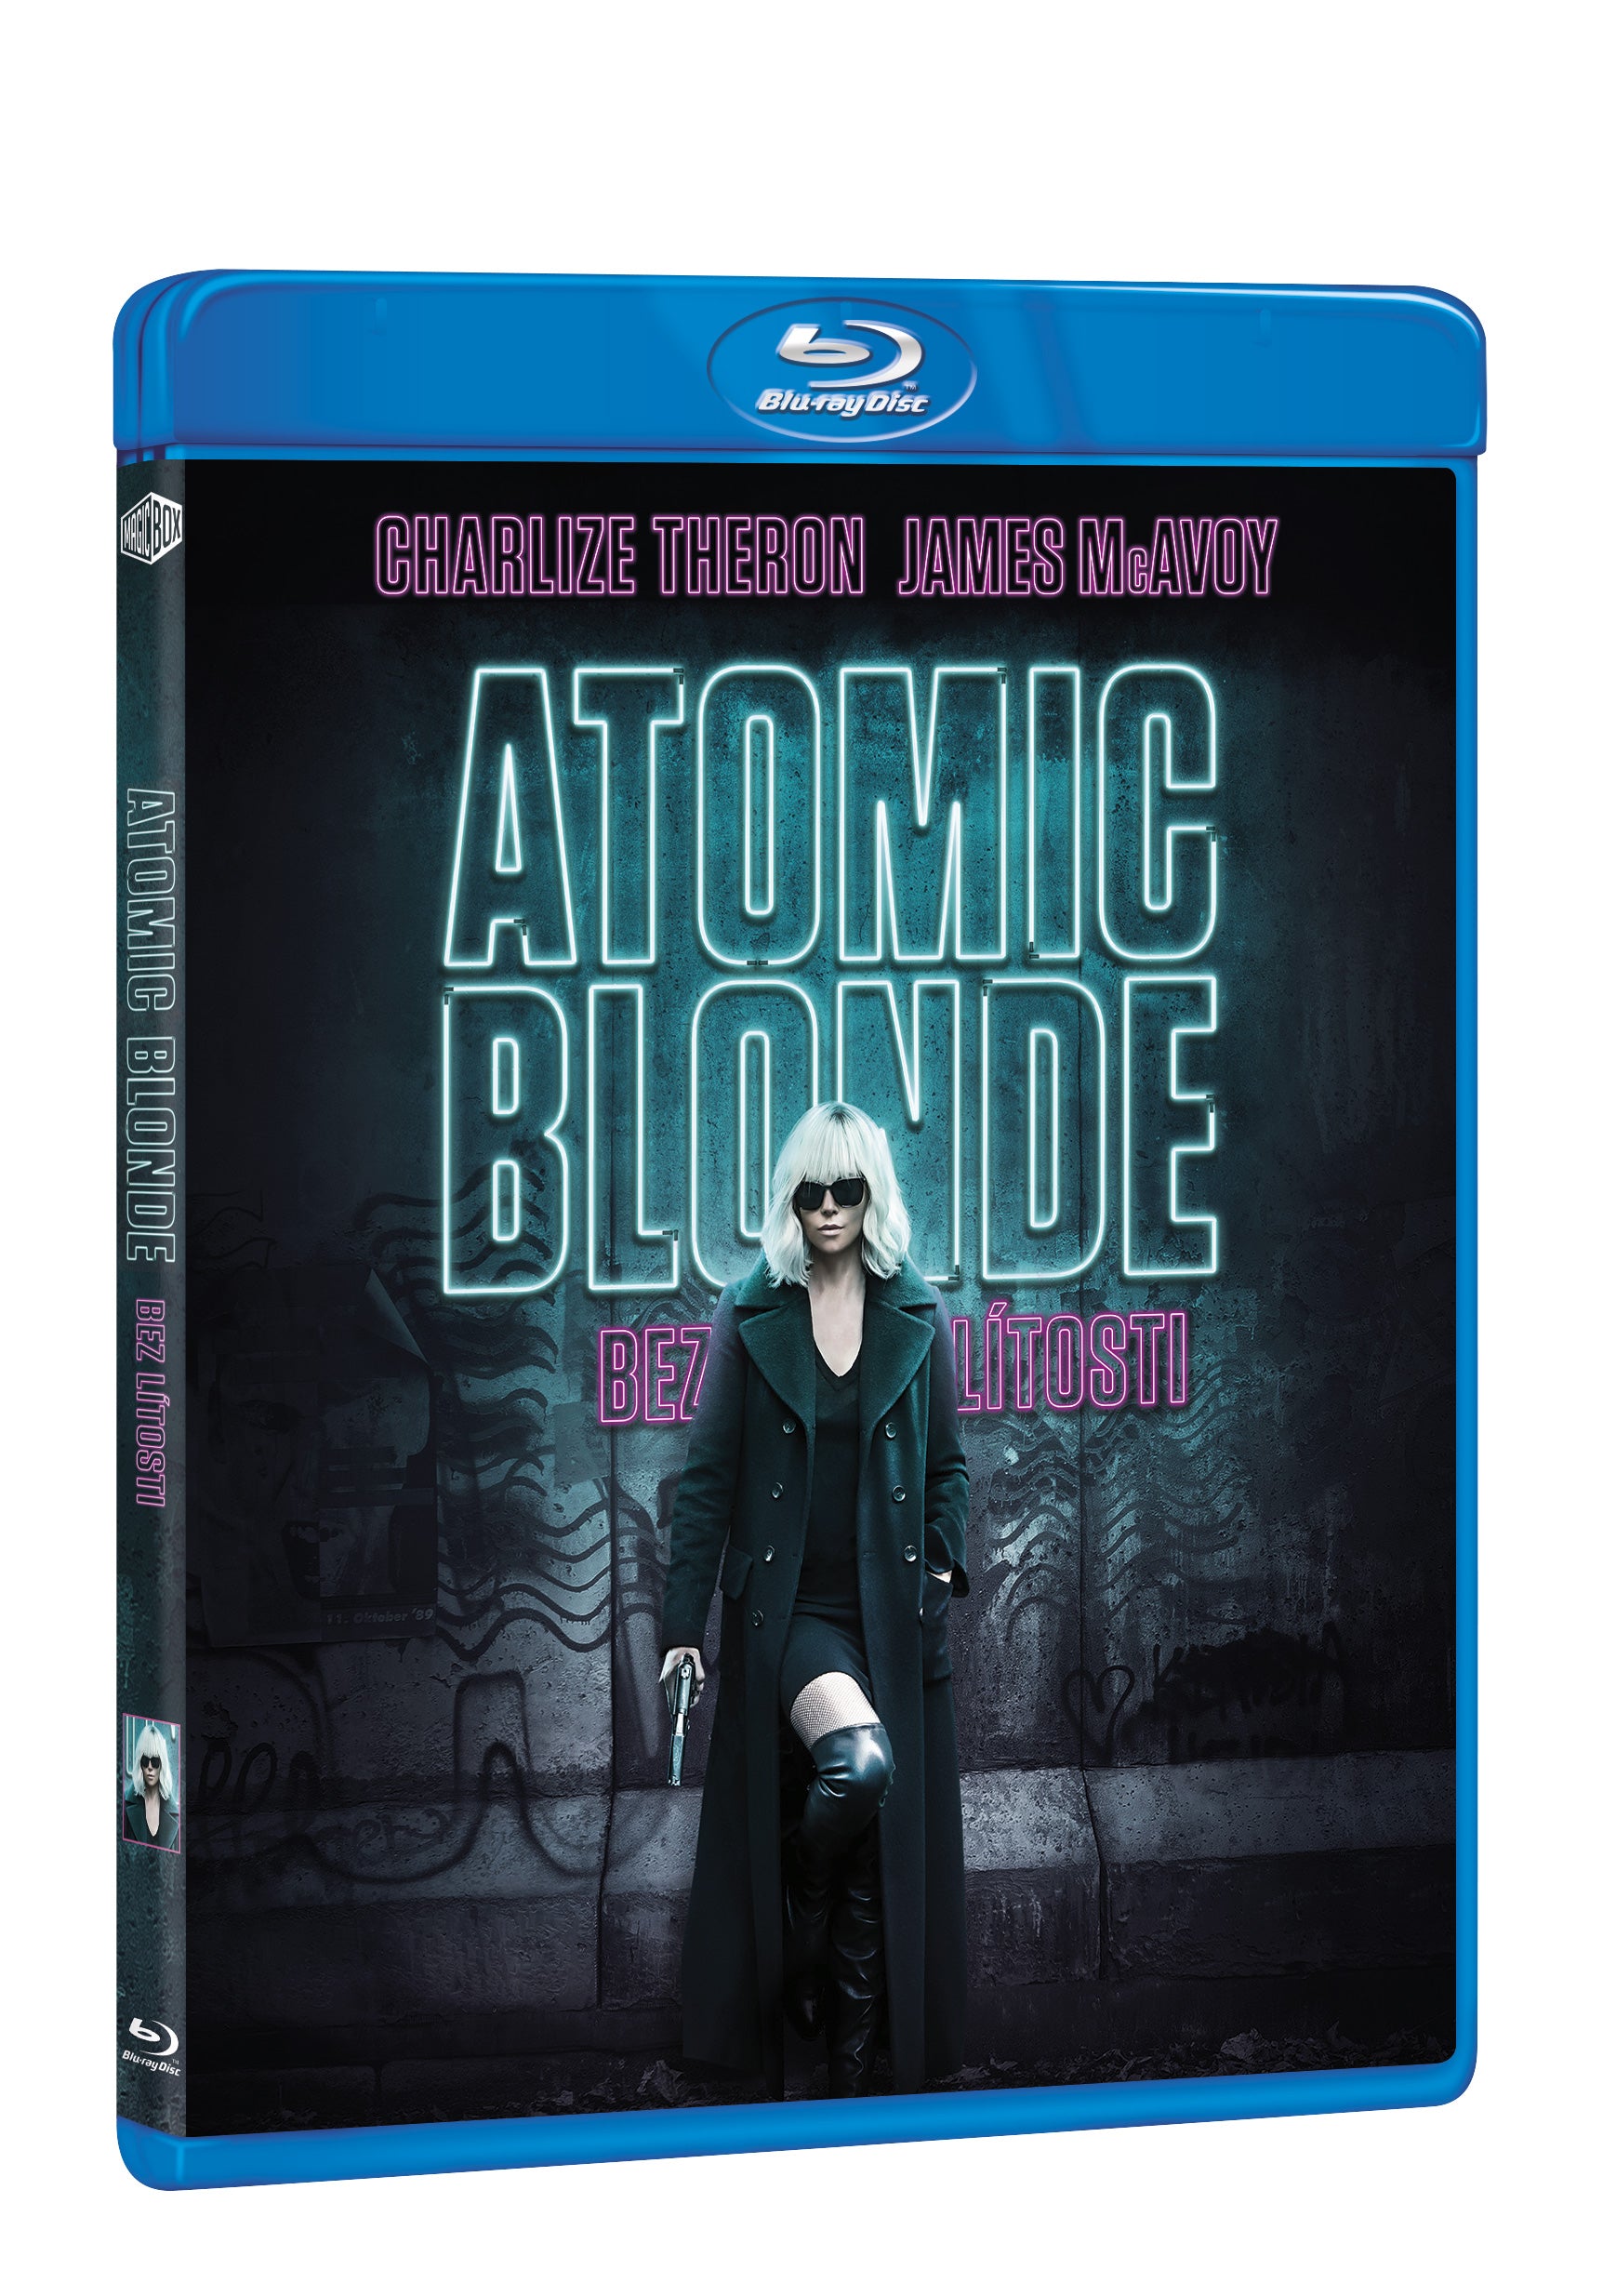 Atomic Blonde: Bez litosti BD / Atomic Blonde - Czech version